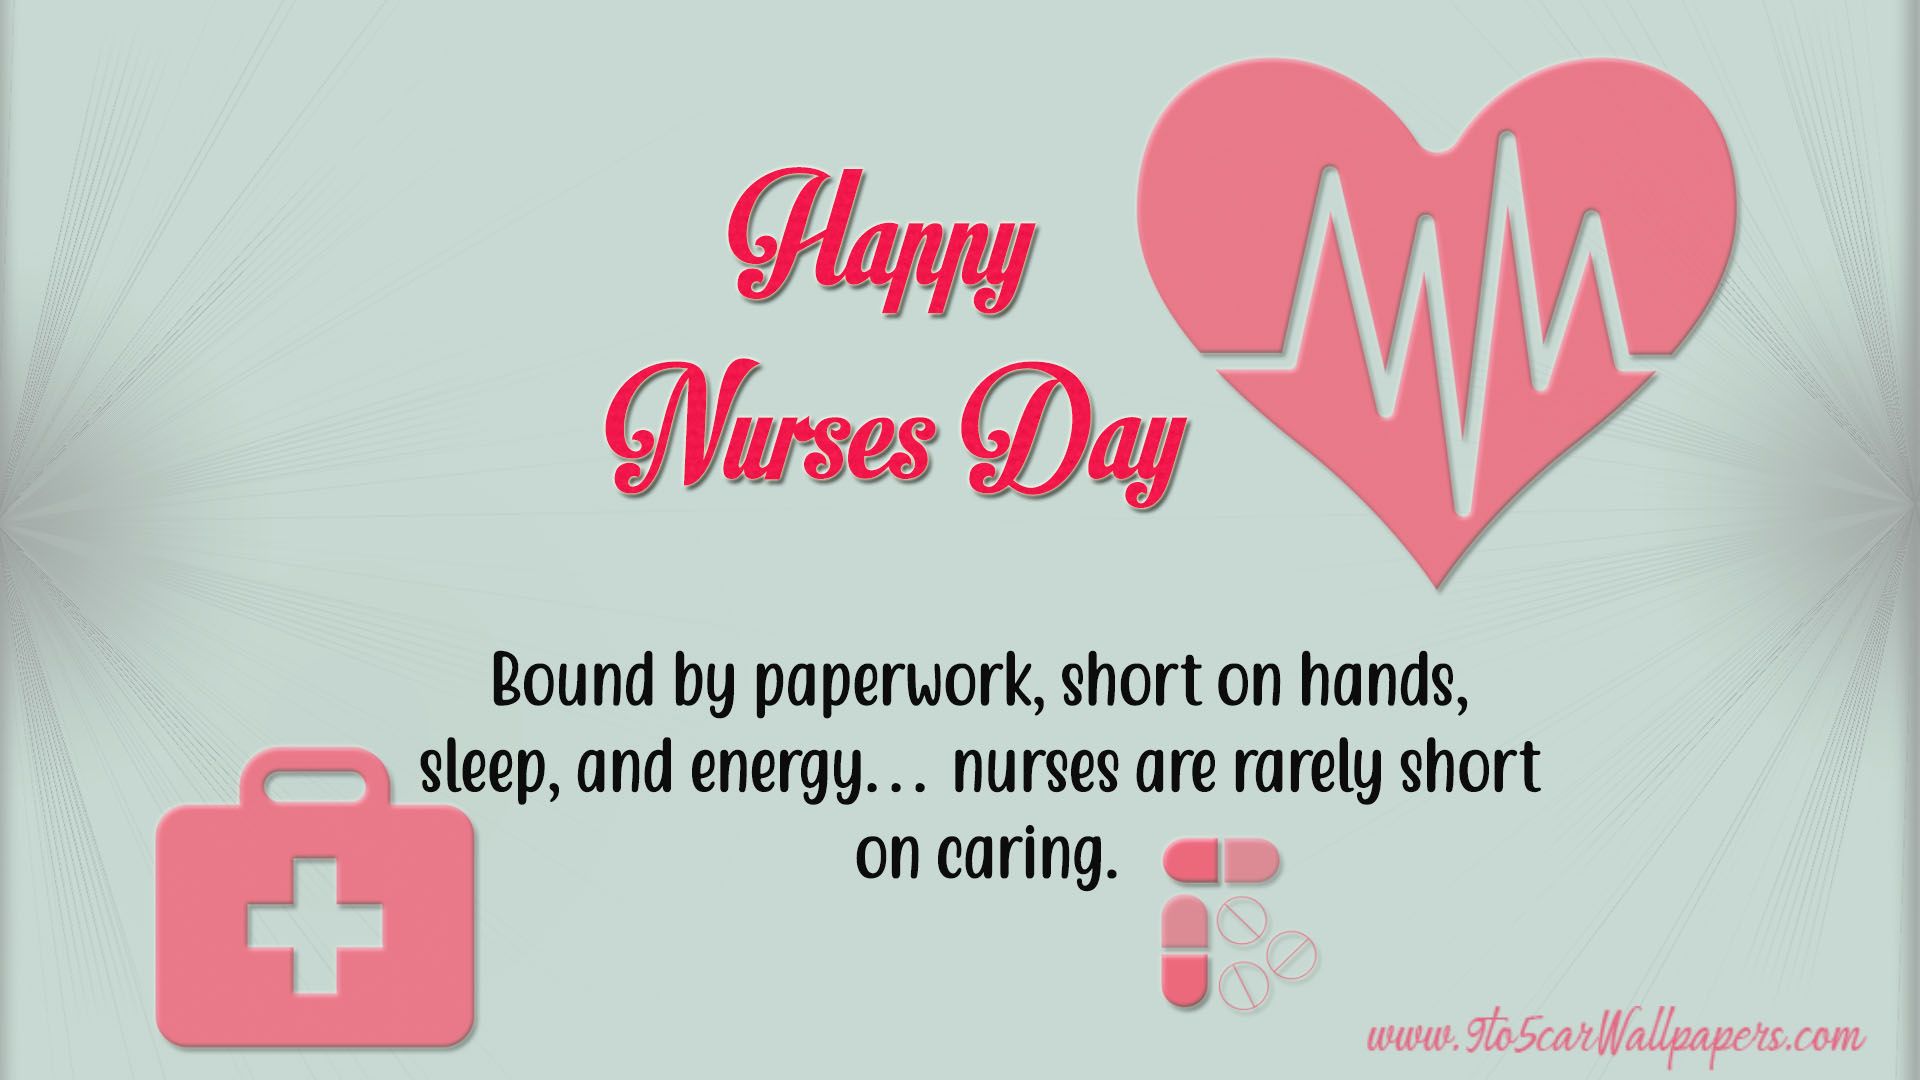 Happy Nurses Day 2019 & Nurses Day Image Free Download